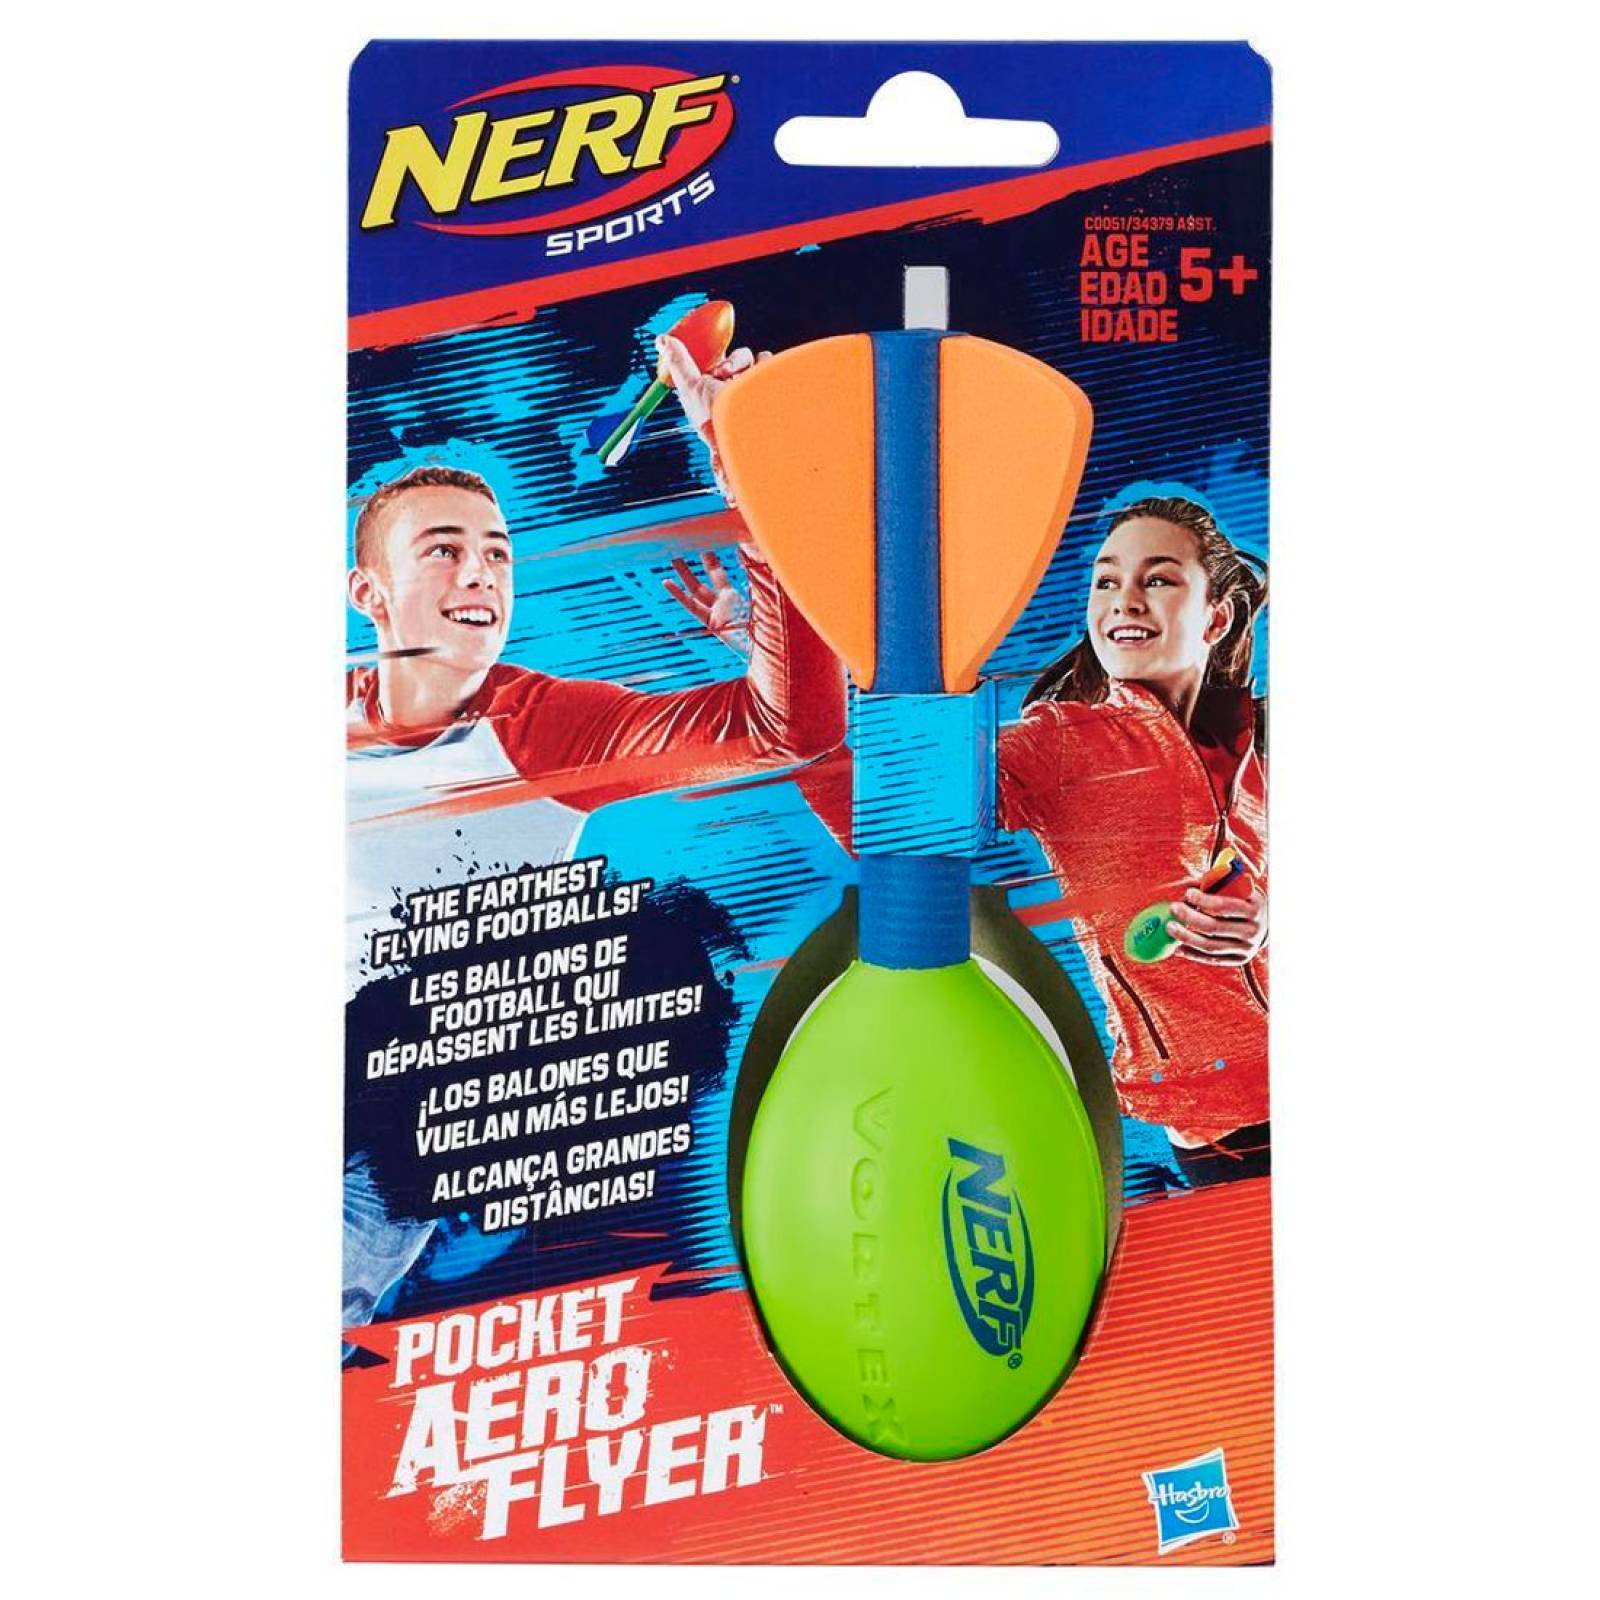 Pelota Pocket Aero Flyer Nerf Sports Assortment Hasbro